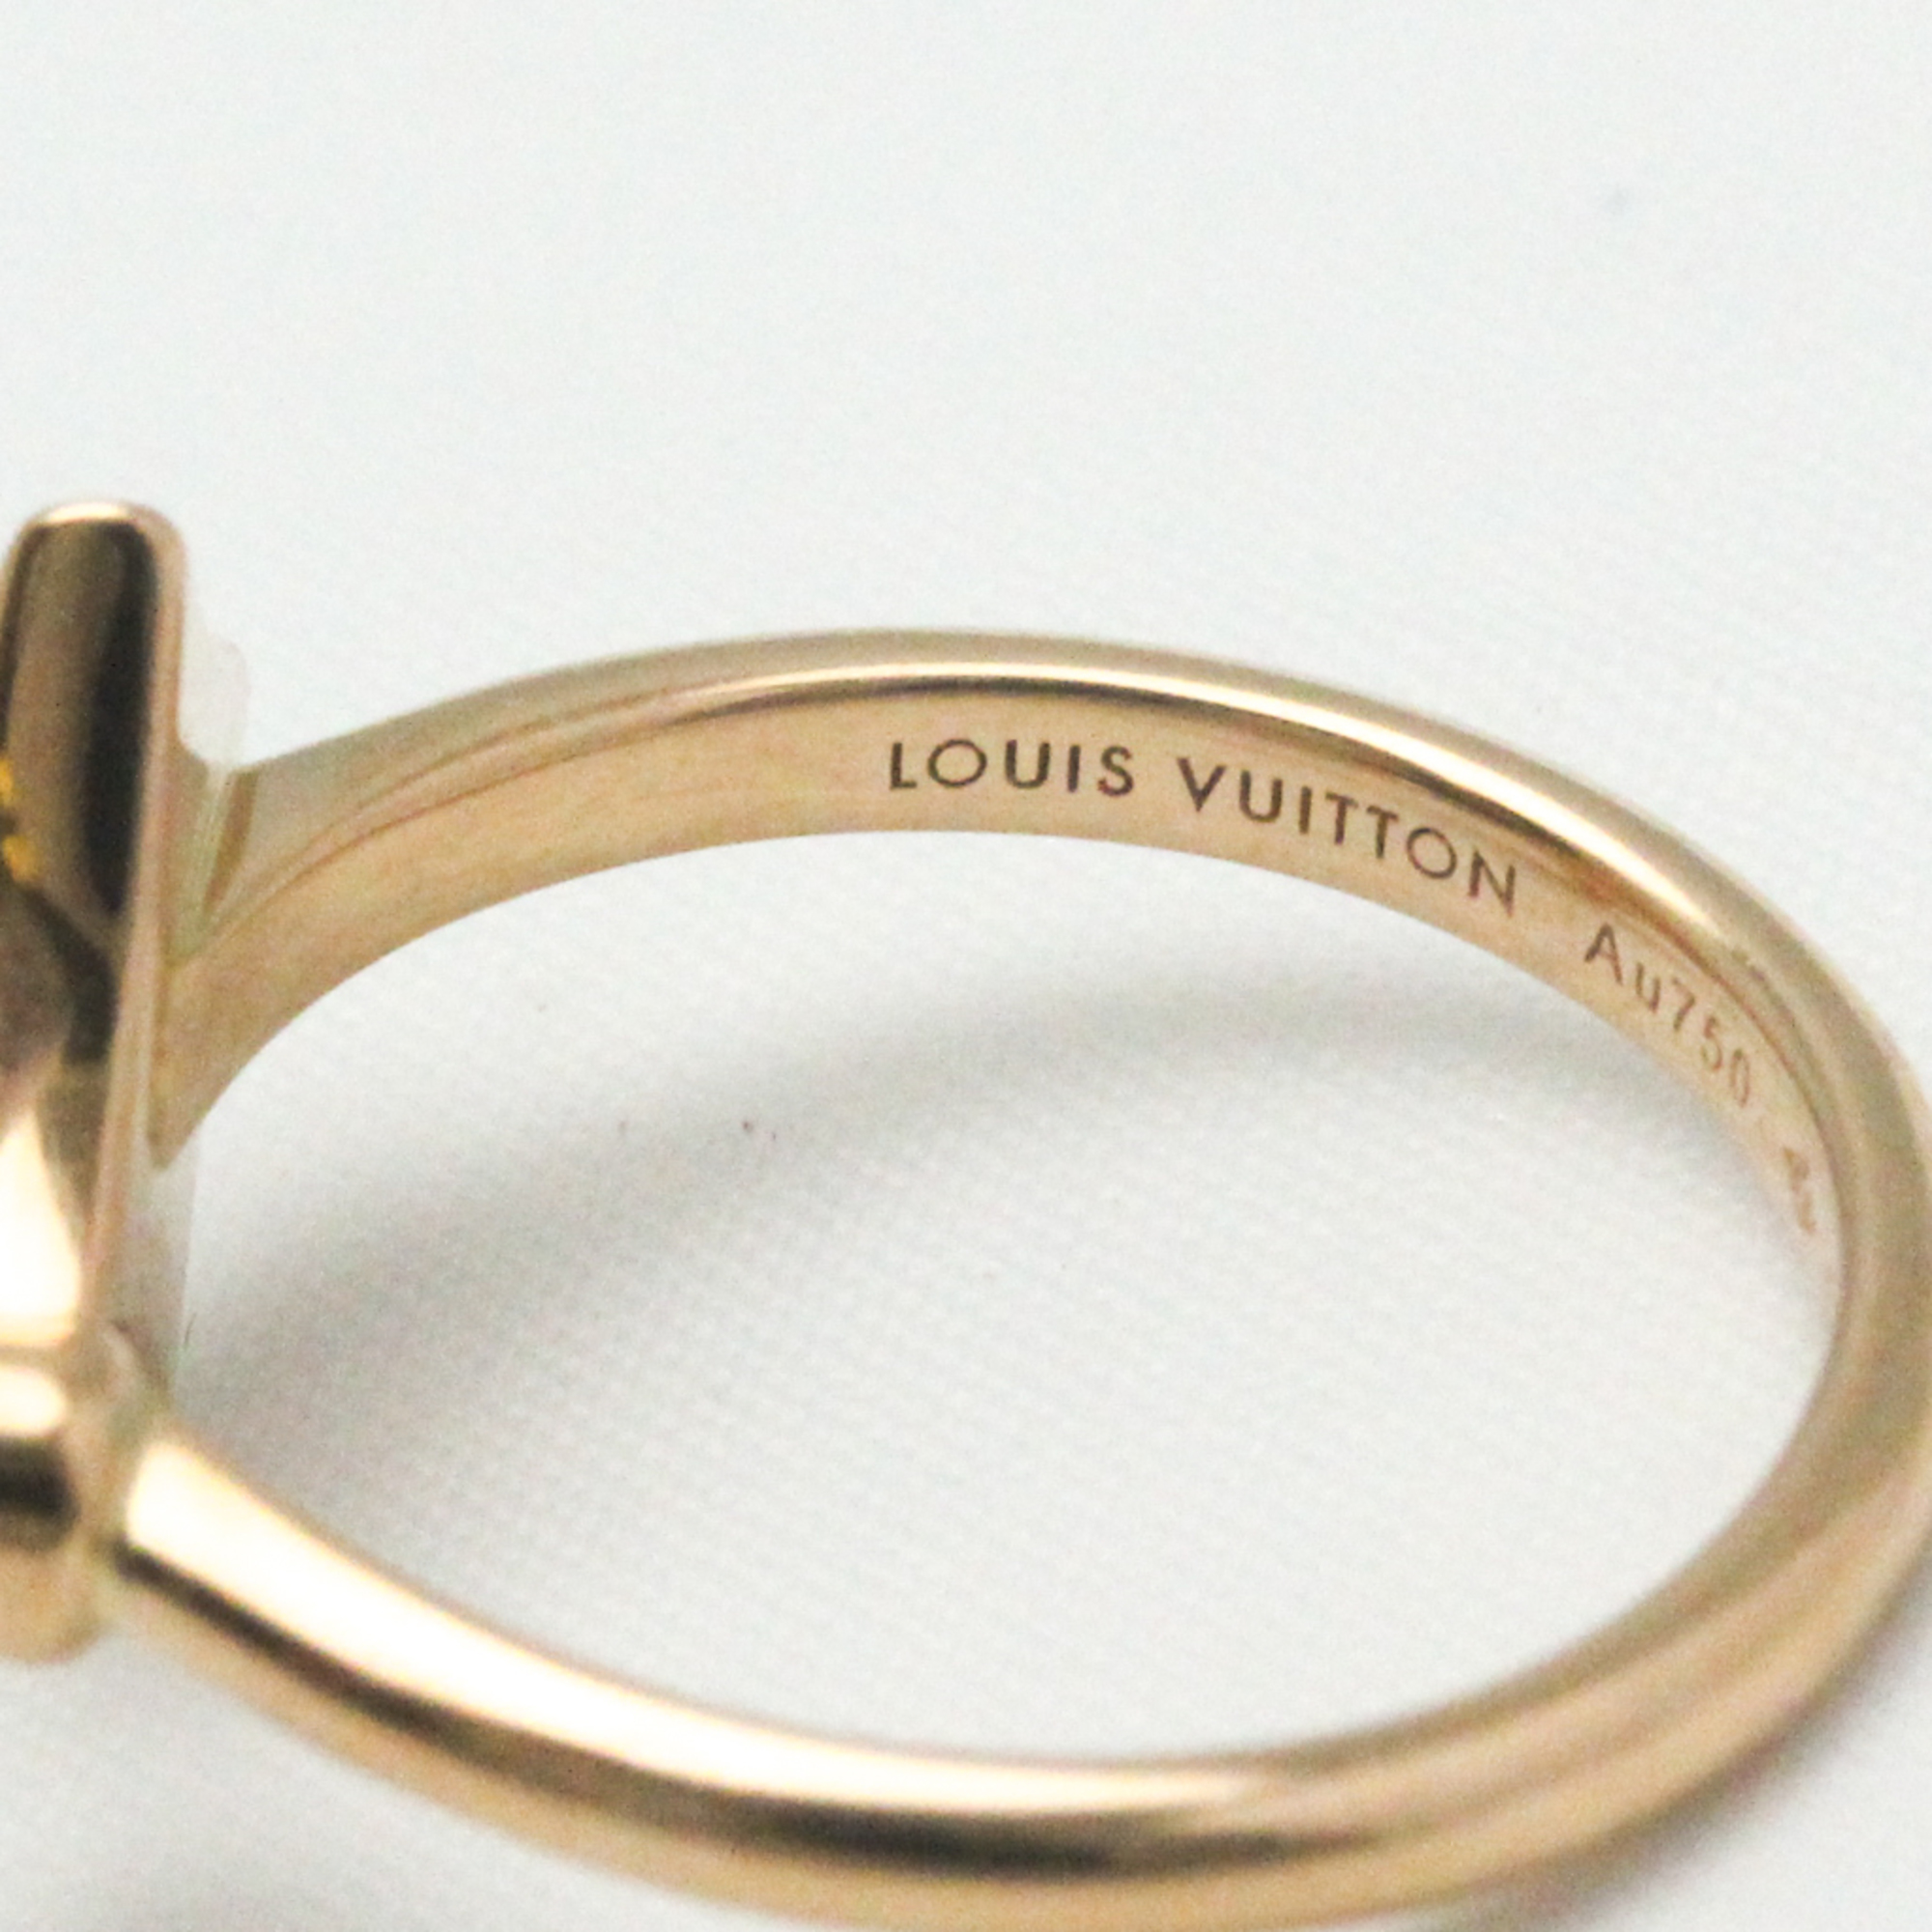 ルイ・ヴィトン(Louis Vuitton) リング スター ブロッサム ミニ (ピンクゴールド×ホワイト マザー・オブ・パール×ダイヤモンド) Q9S80A K18ピンクゴールド(K18PG) ファッション ダイヤモンド,シェル バンドリング カラット/0.04 ピンクゴールド(PG)